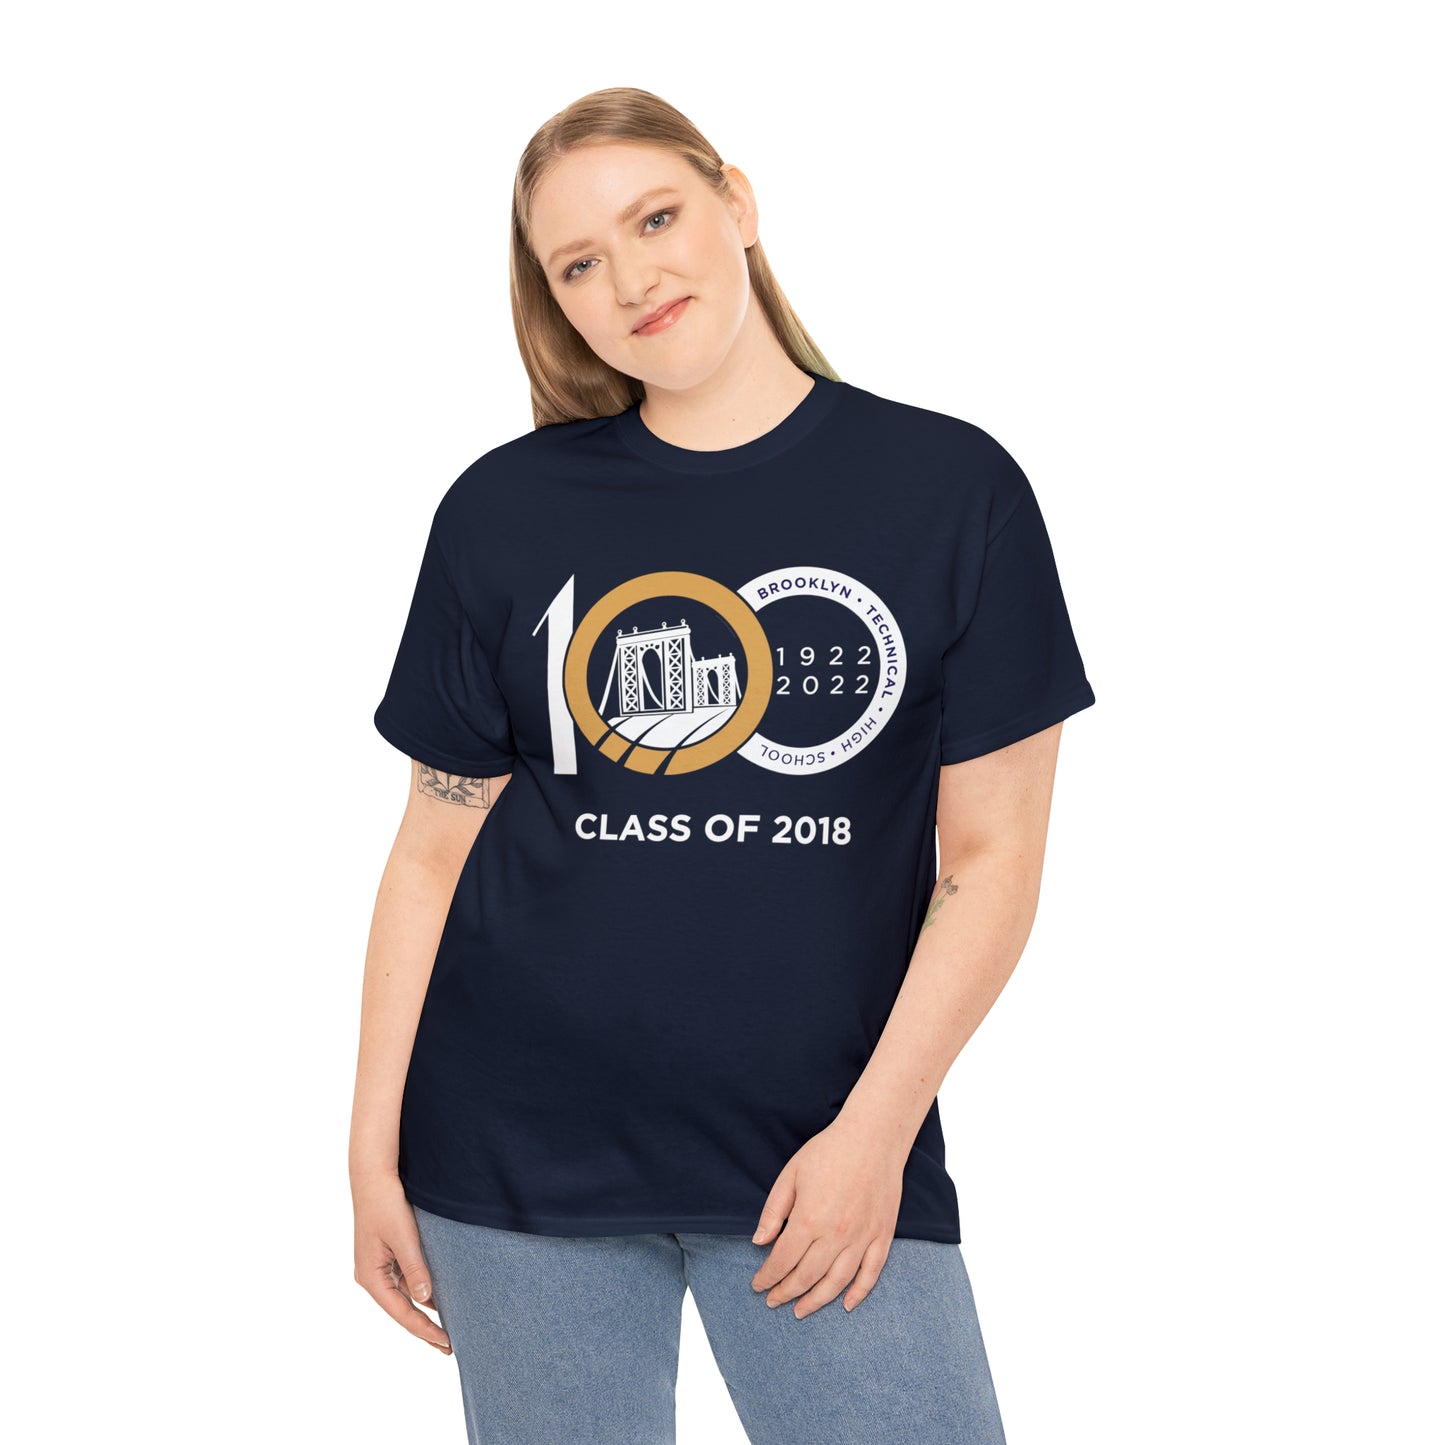 Centennial - Men's Heavy Cotton T-Shirt - Class Of 2018